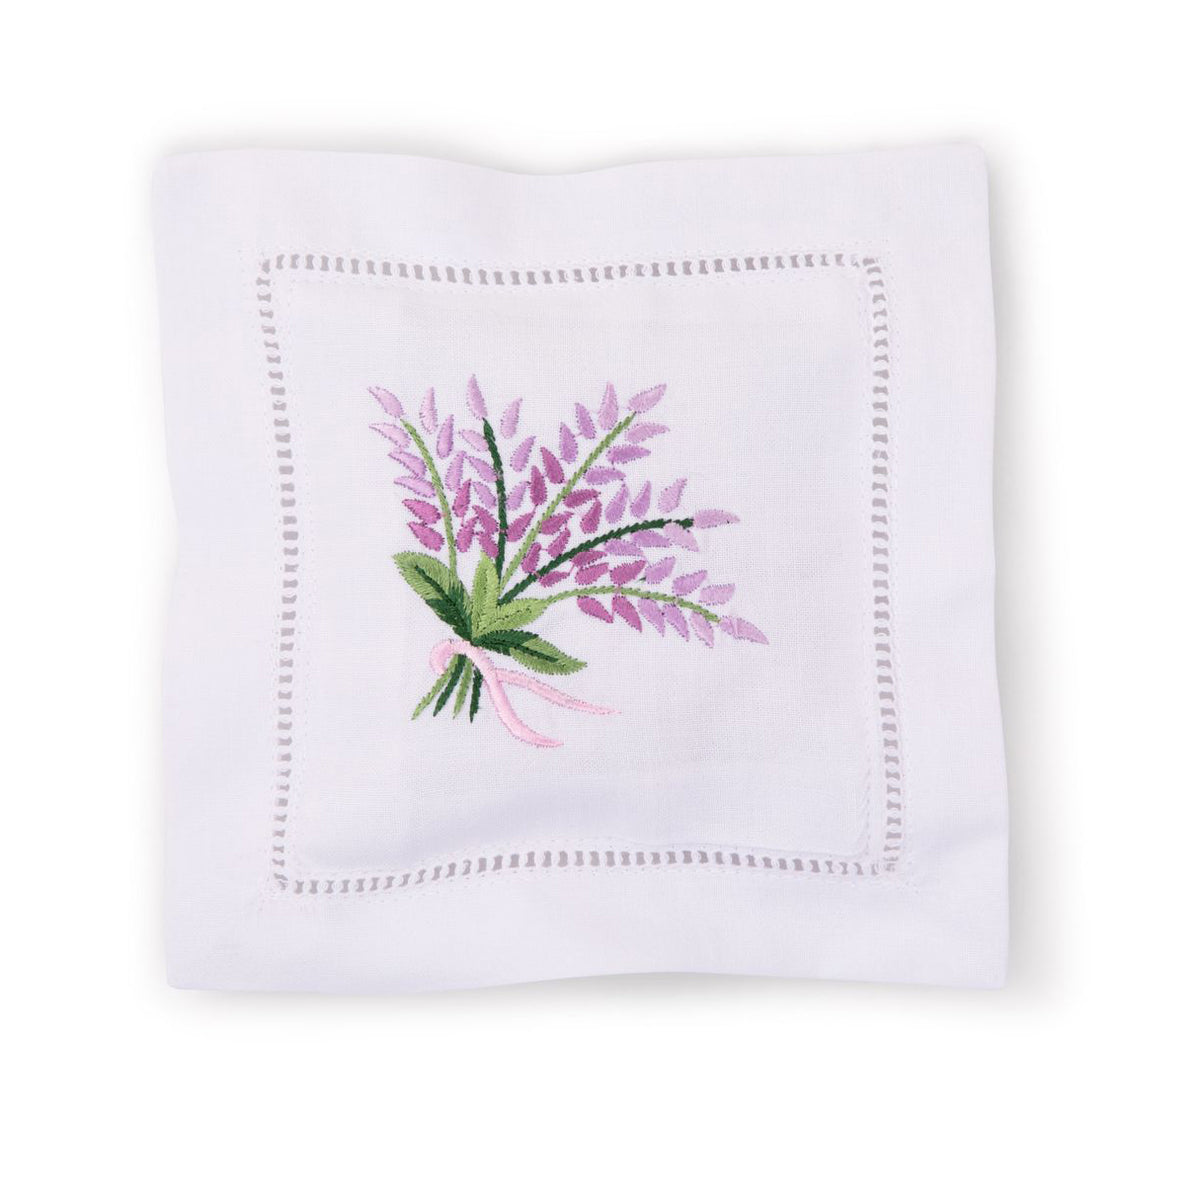 Embroidered Lavender Sachet